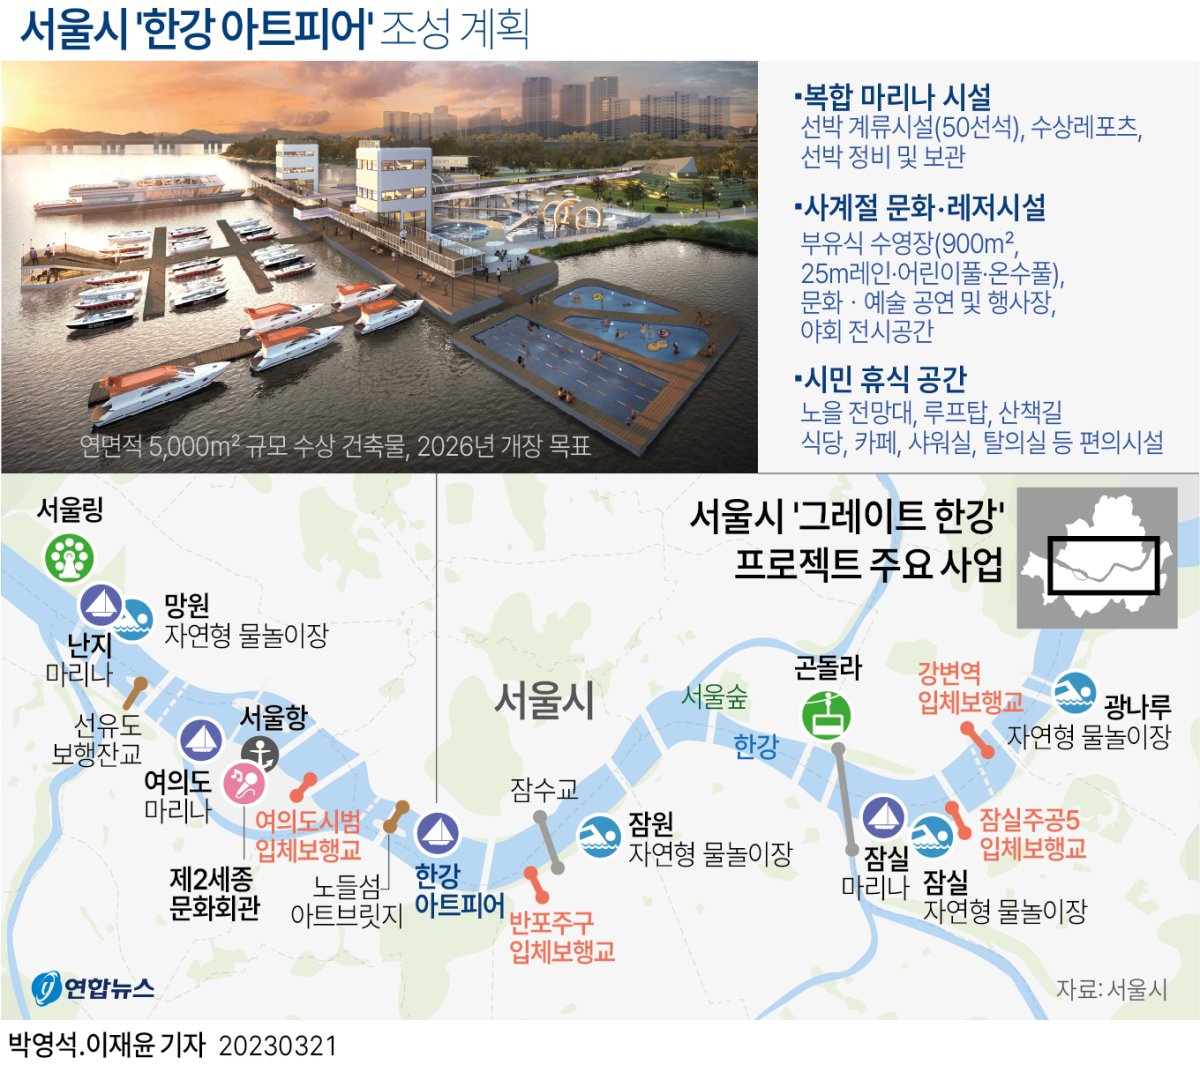  서울시 '한강 아트피어' 조성 계획